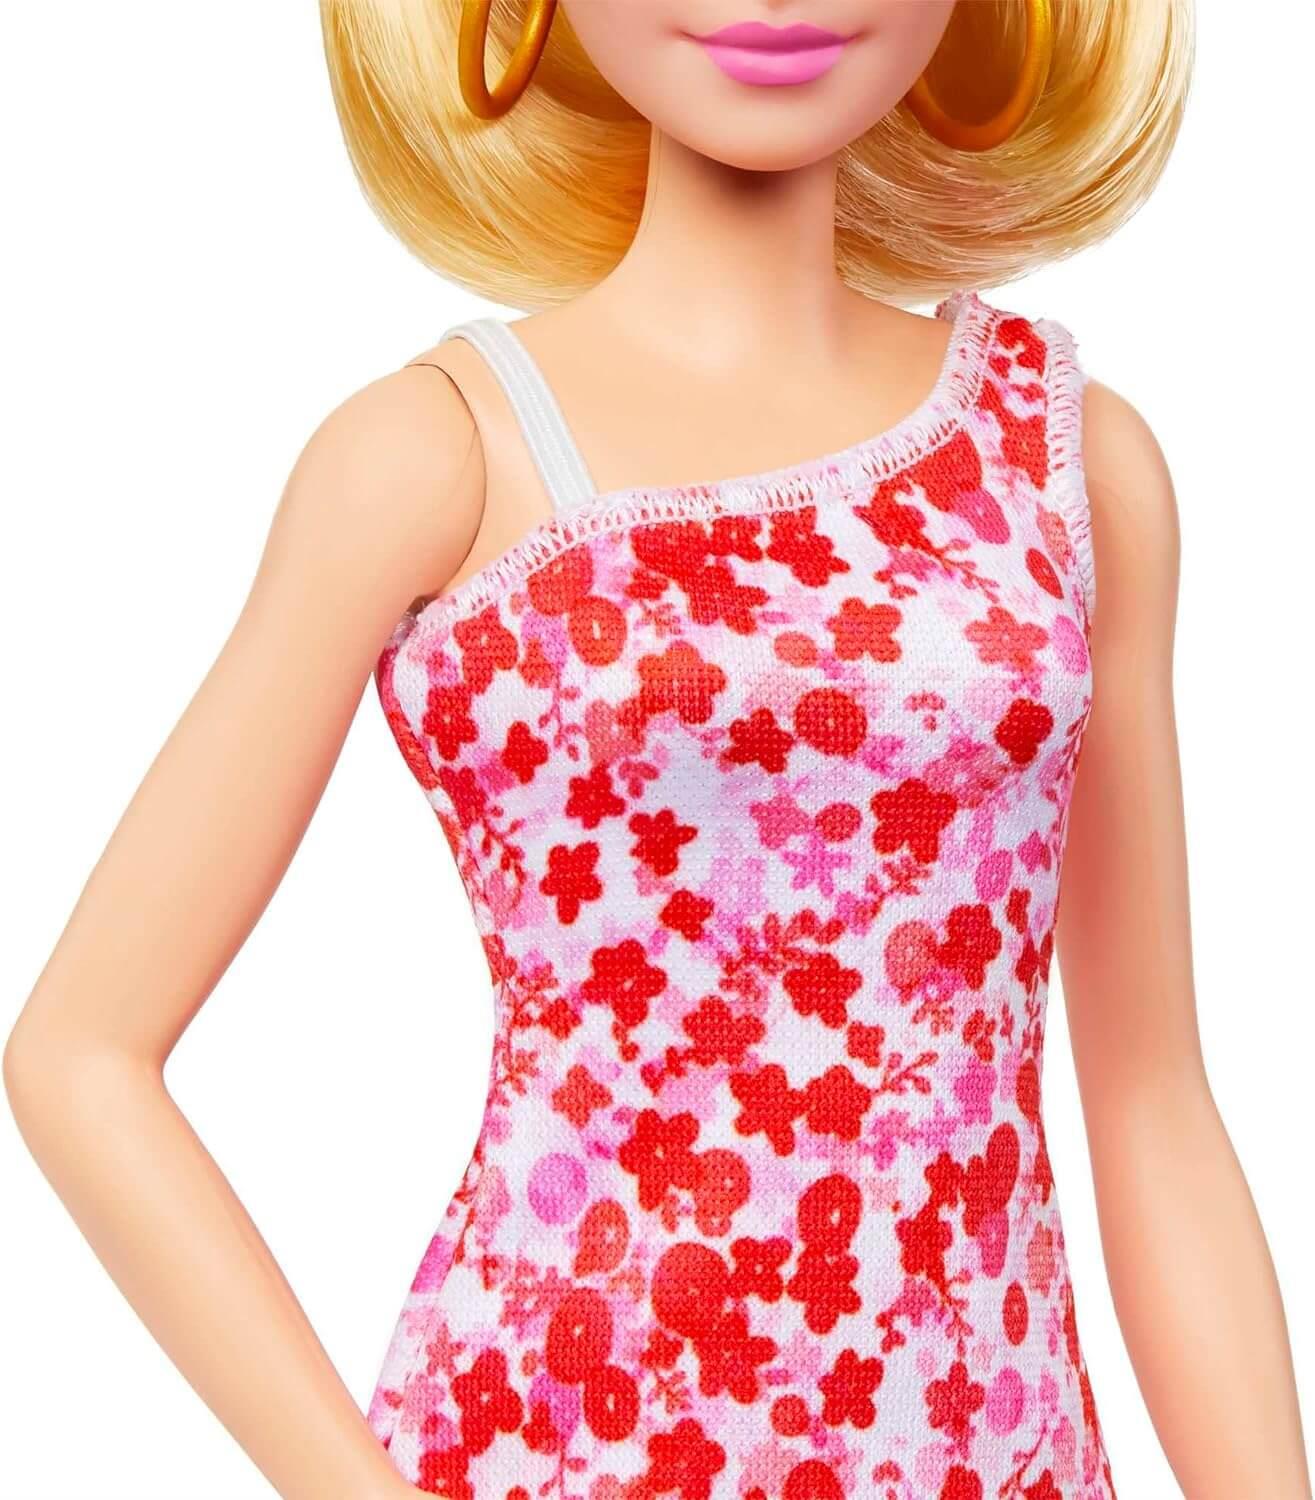 Barbie Fashionista Doll #205